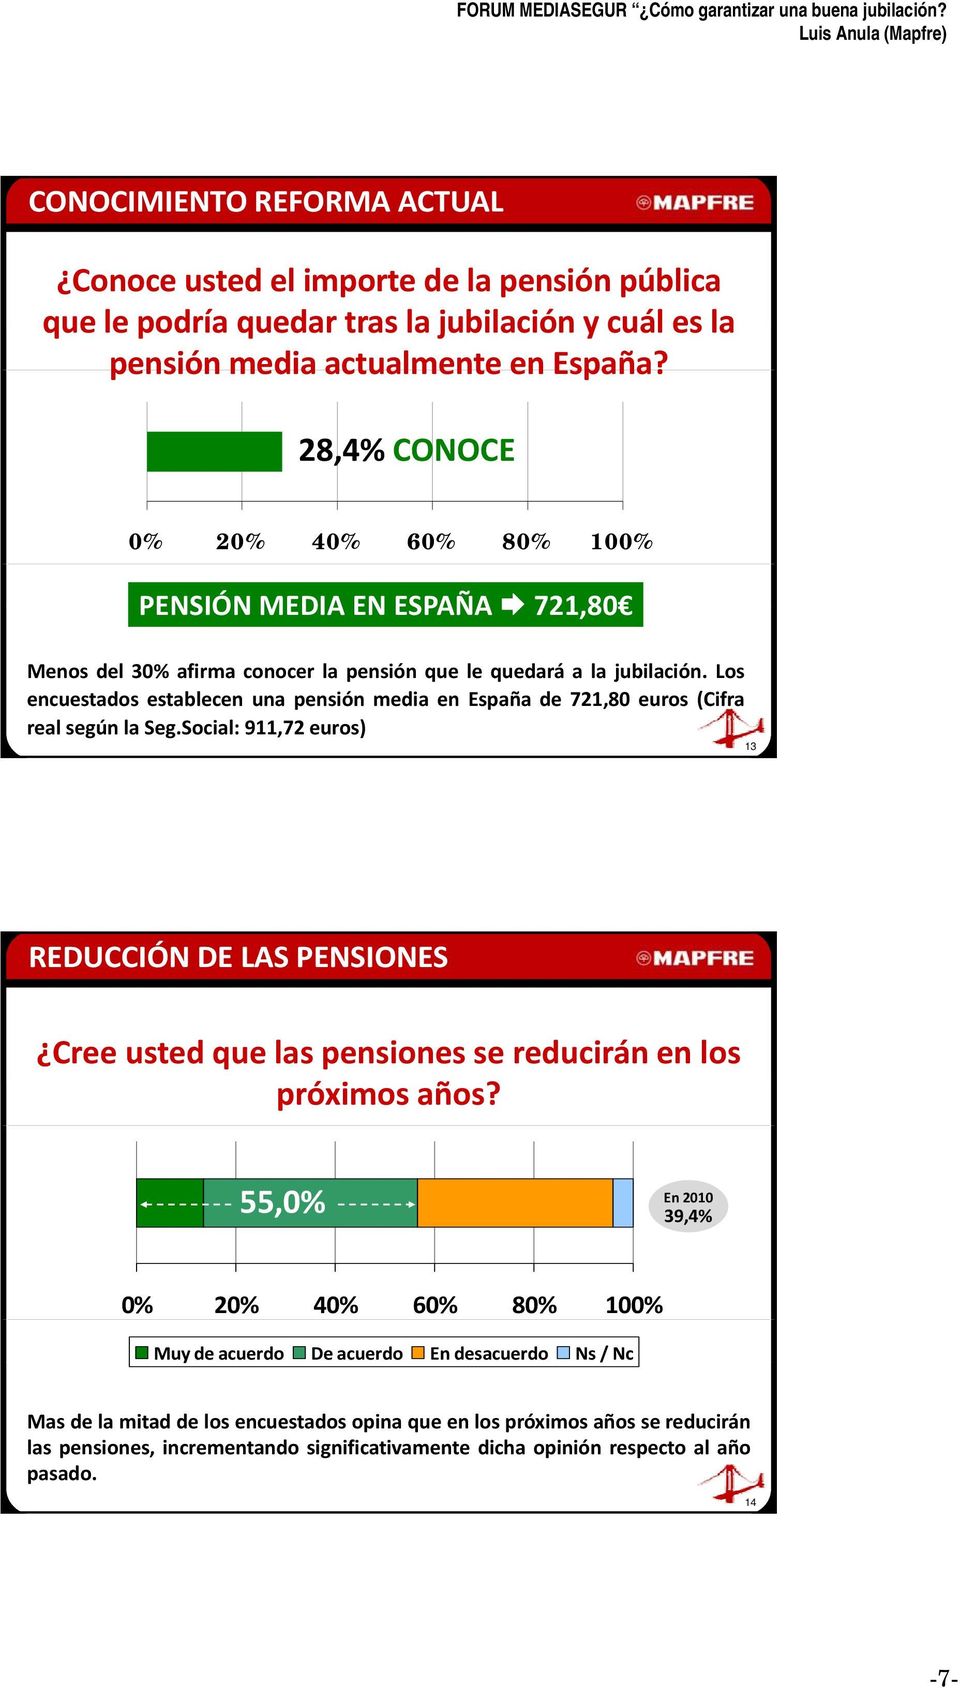 Los encuestados establecen una pensión media en España de 721,80 euros (Cifra real según la Seg.